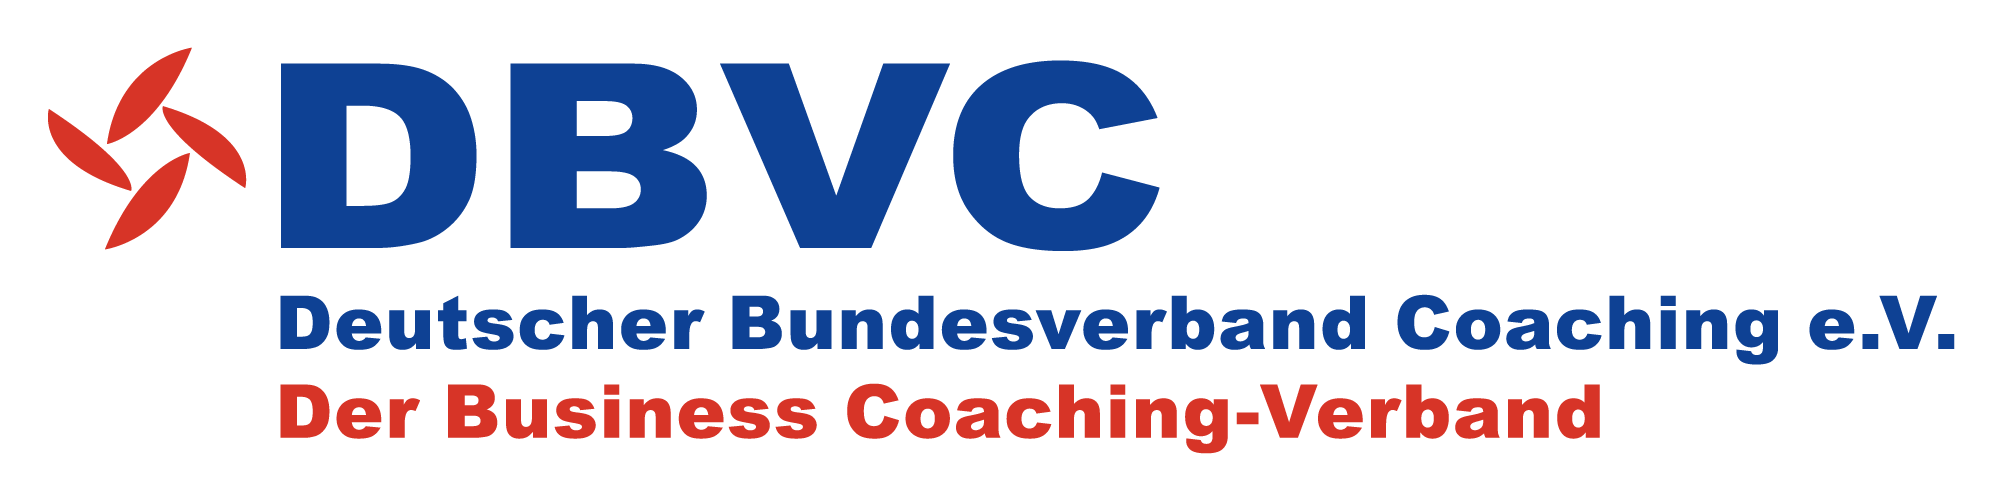 DBVC Deutscher Bundesverband Coaching